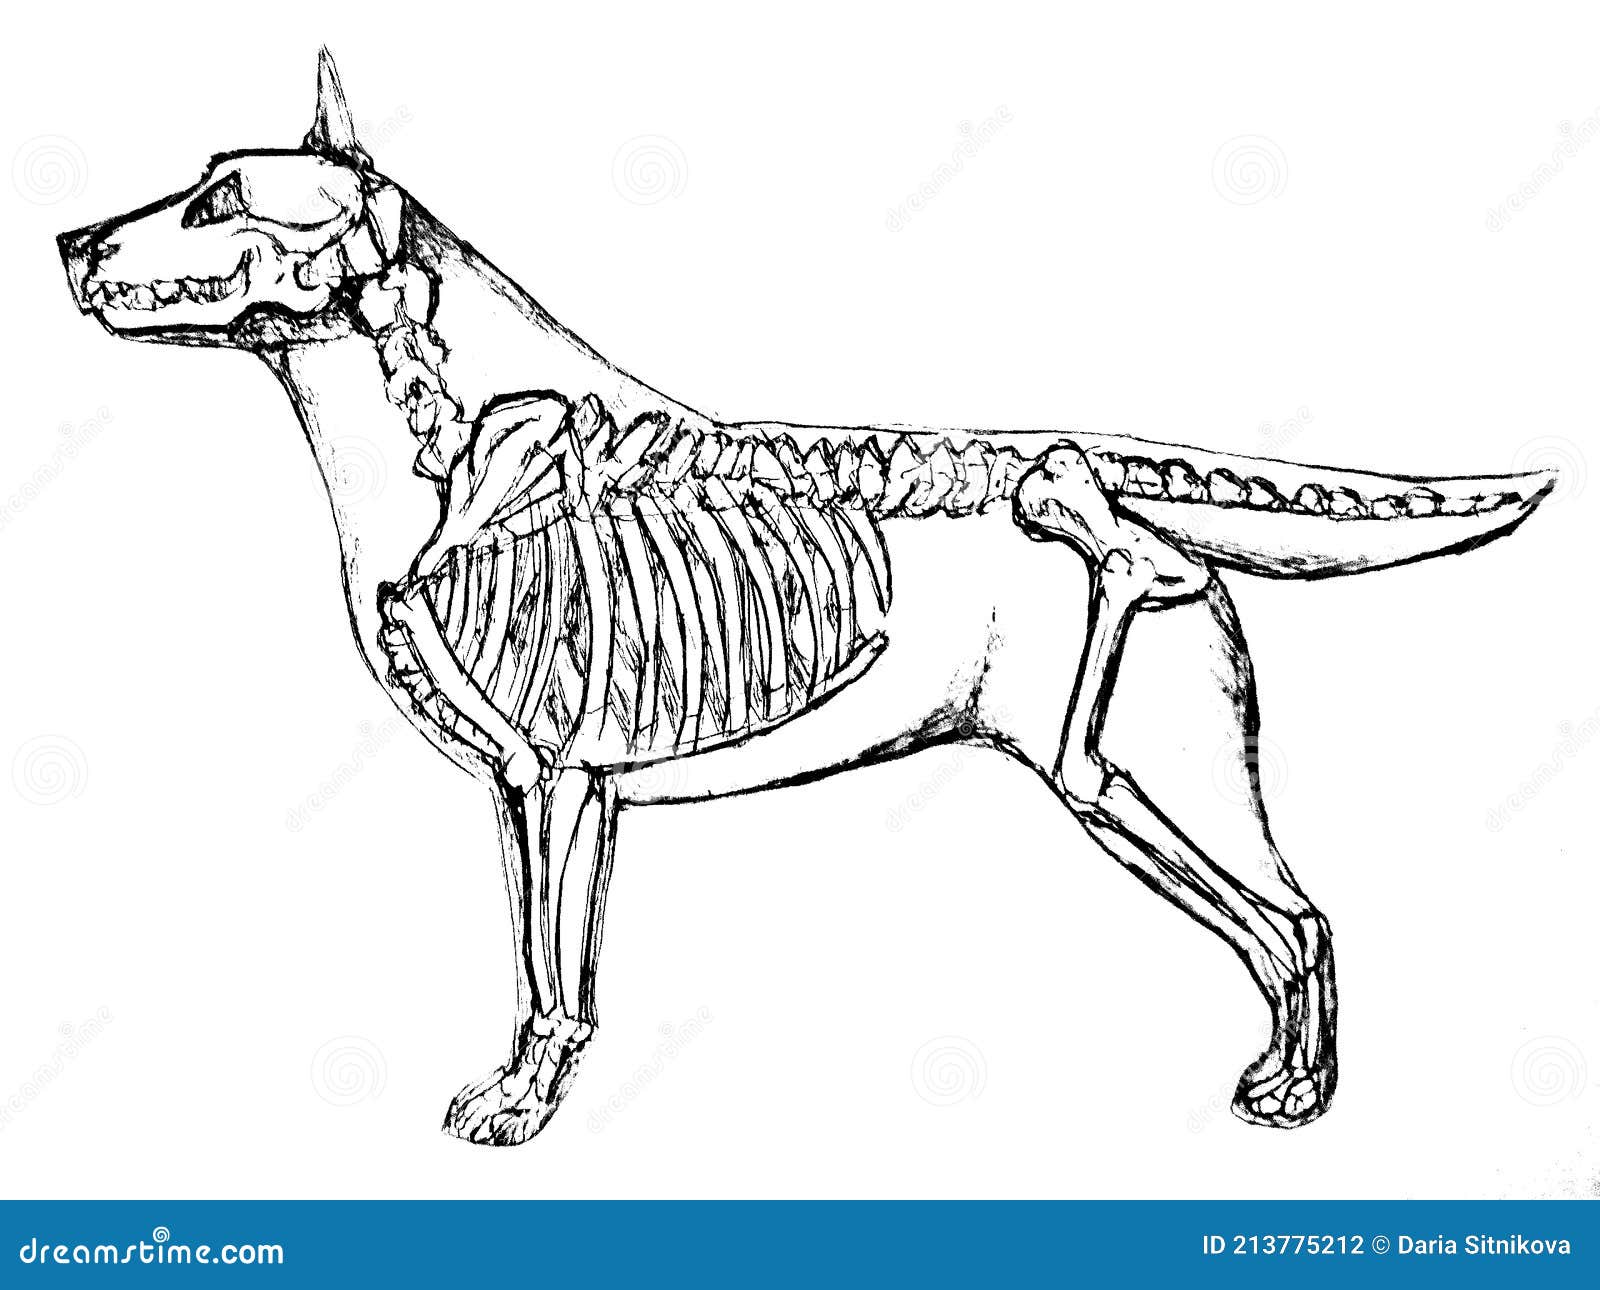  of a dog skeleton